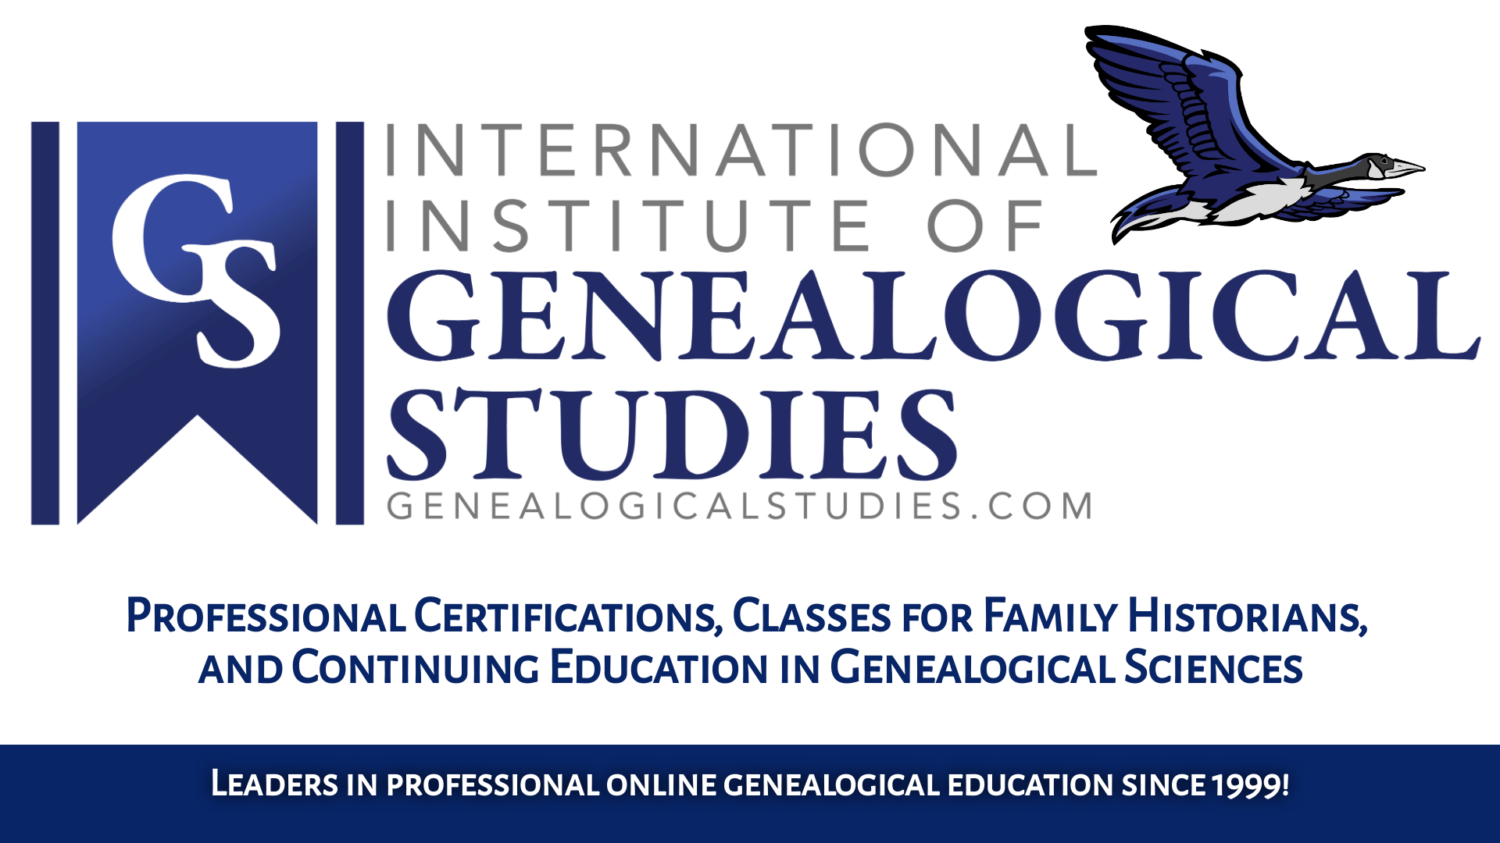 International Institute of Genealogical Studies - LEADERS IN ONLINE GENEALOGY EDUCATION